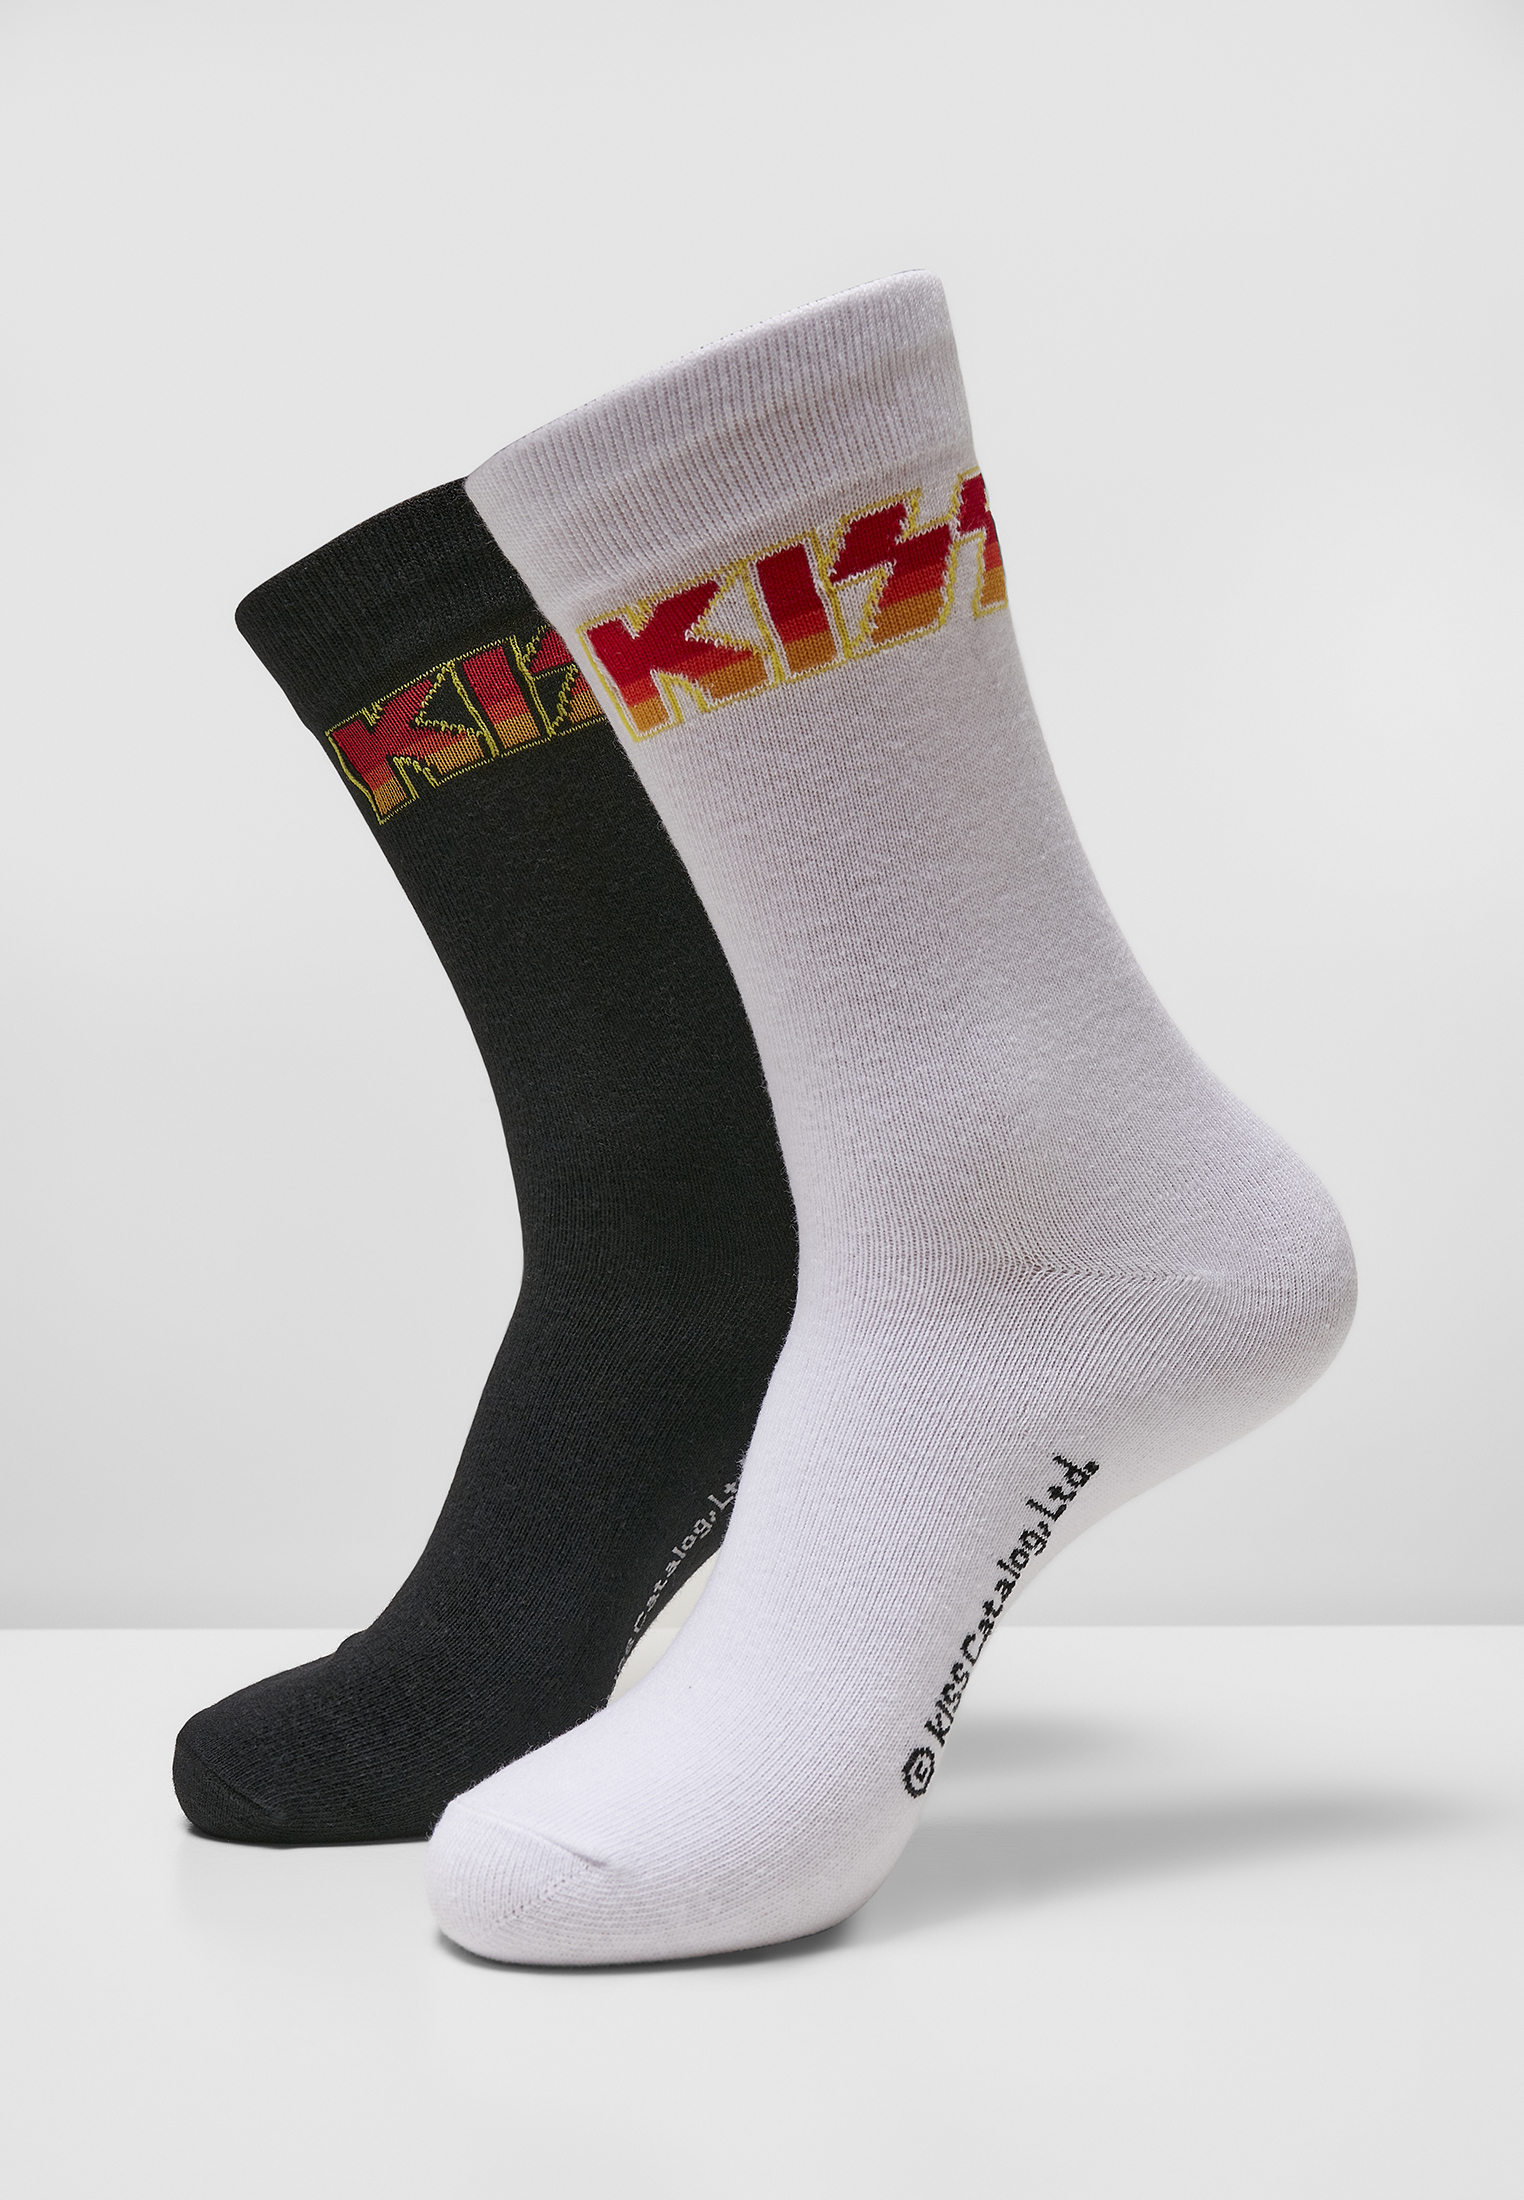 Socken Kiss Socks 2-Pack in Farbe black/white